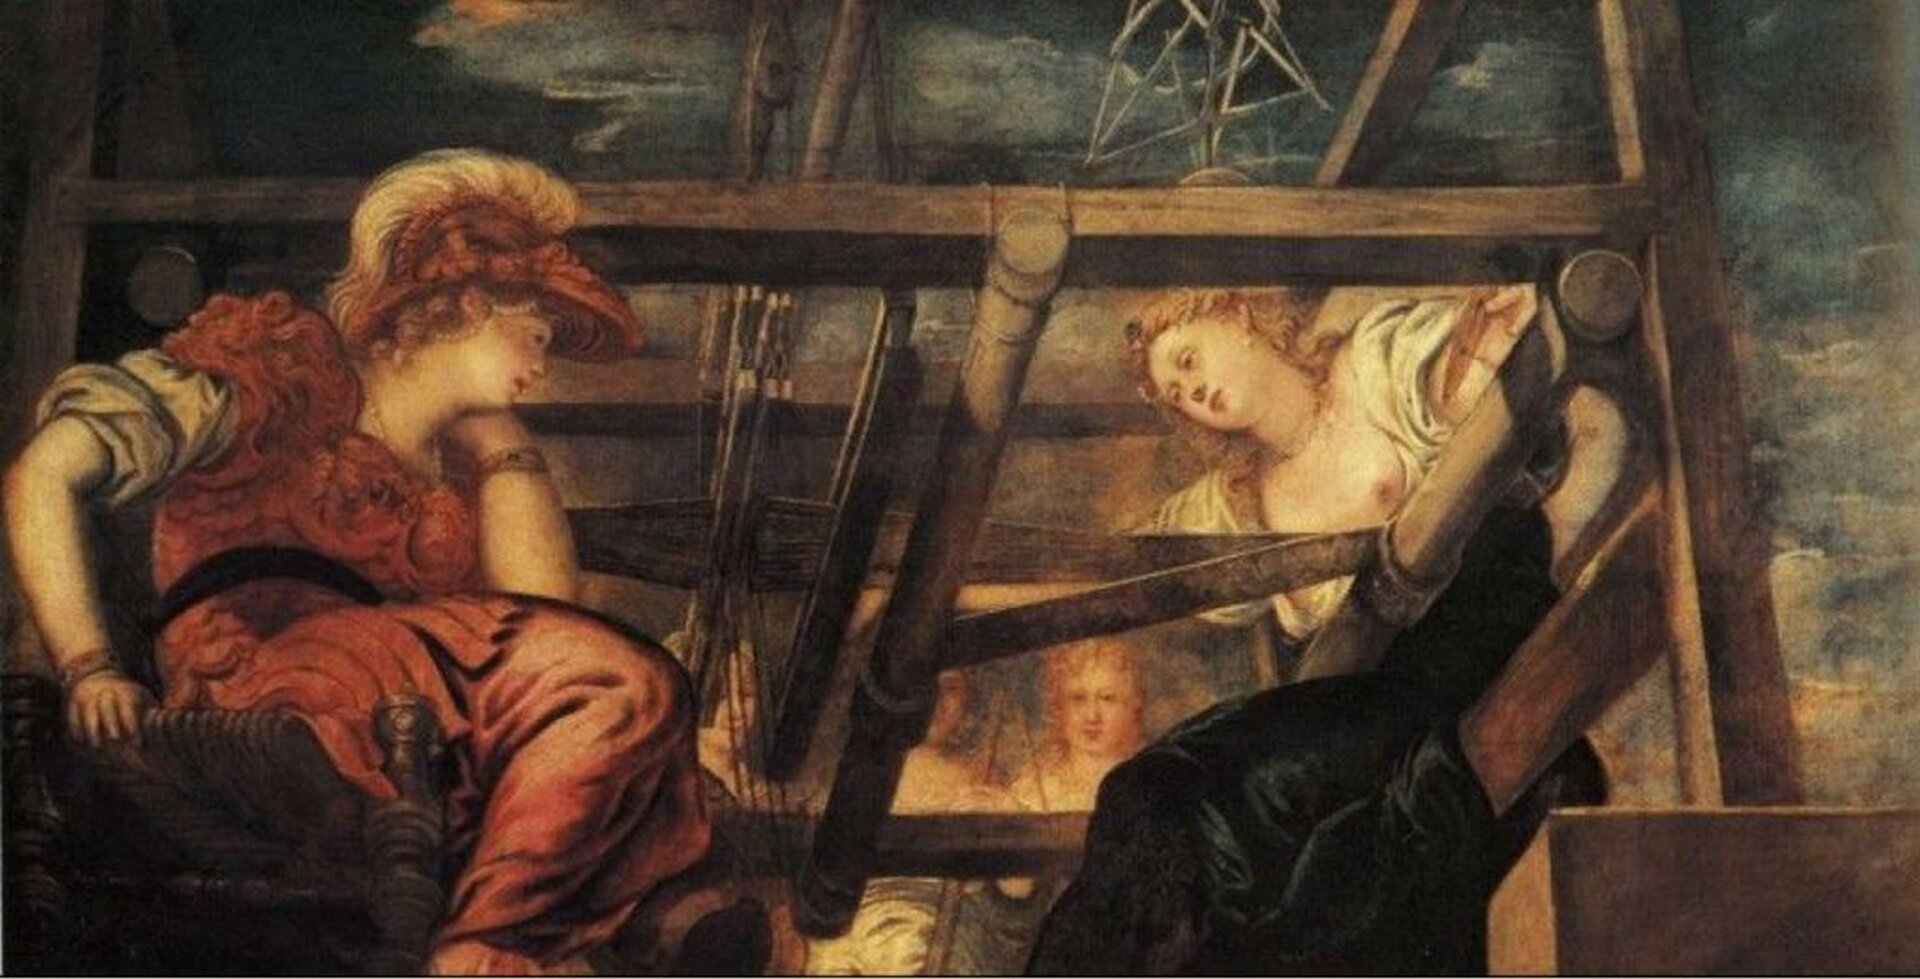 Kolorowa ilustracja przedstawia dzieło dzieło Jacobo Robusti Tintoretta pt. , „Atena i Arachne”. Na obrazie znajduje się bogini Atena a naprzeciwko niej młoda kobieta. Siedzą przy krosnach. Atena ubrana jest w czerwoną szatę; na głowie ma hełm. Ariadna ma na sobie jasną szatę. Obraz ukazuje postaci od dołu.